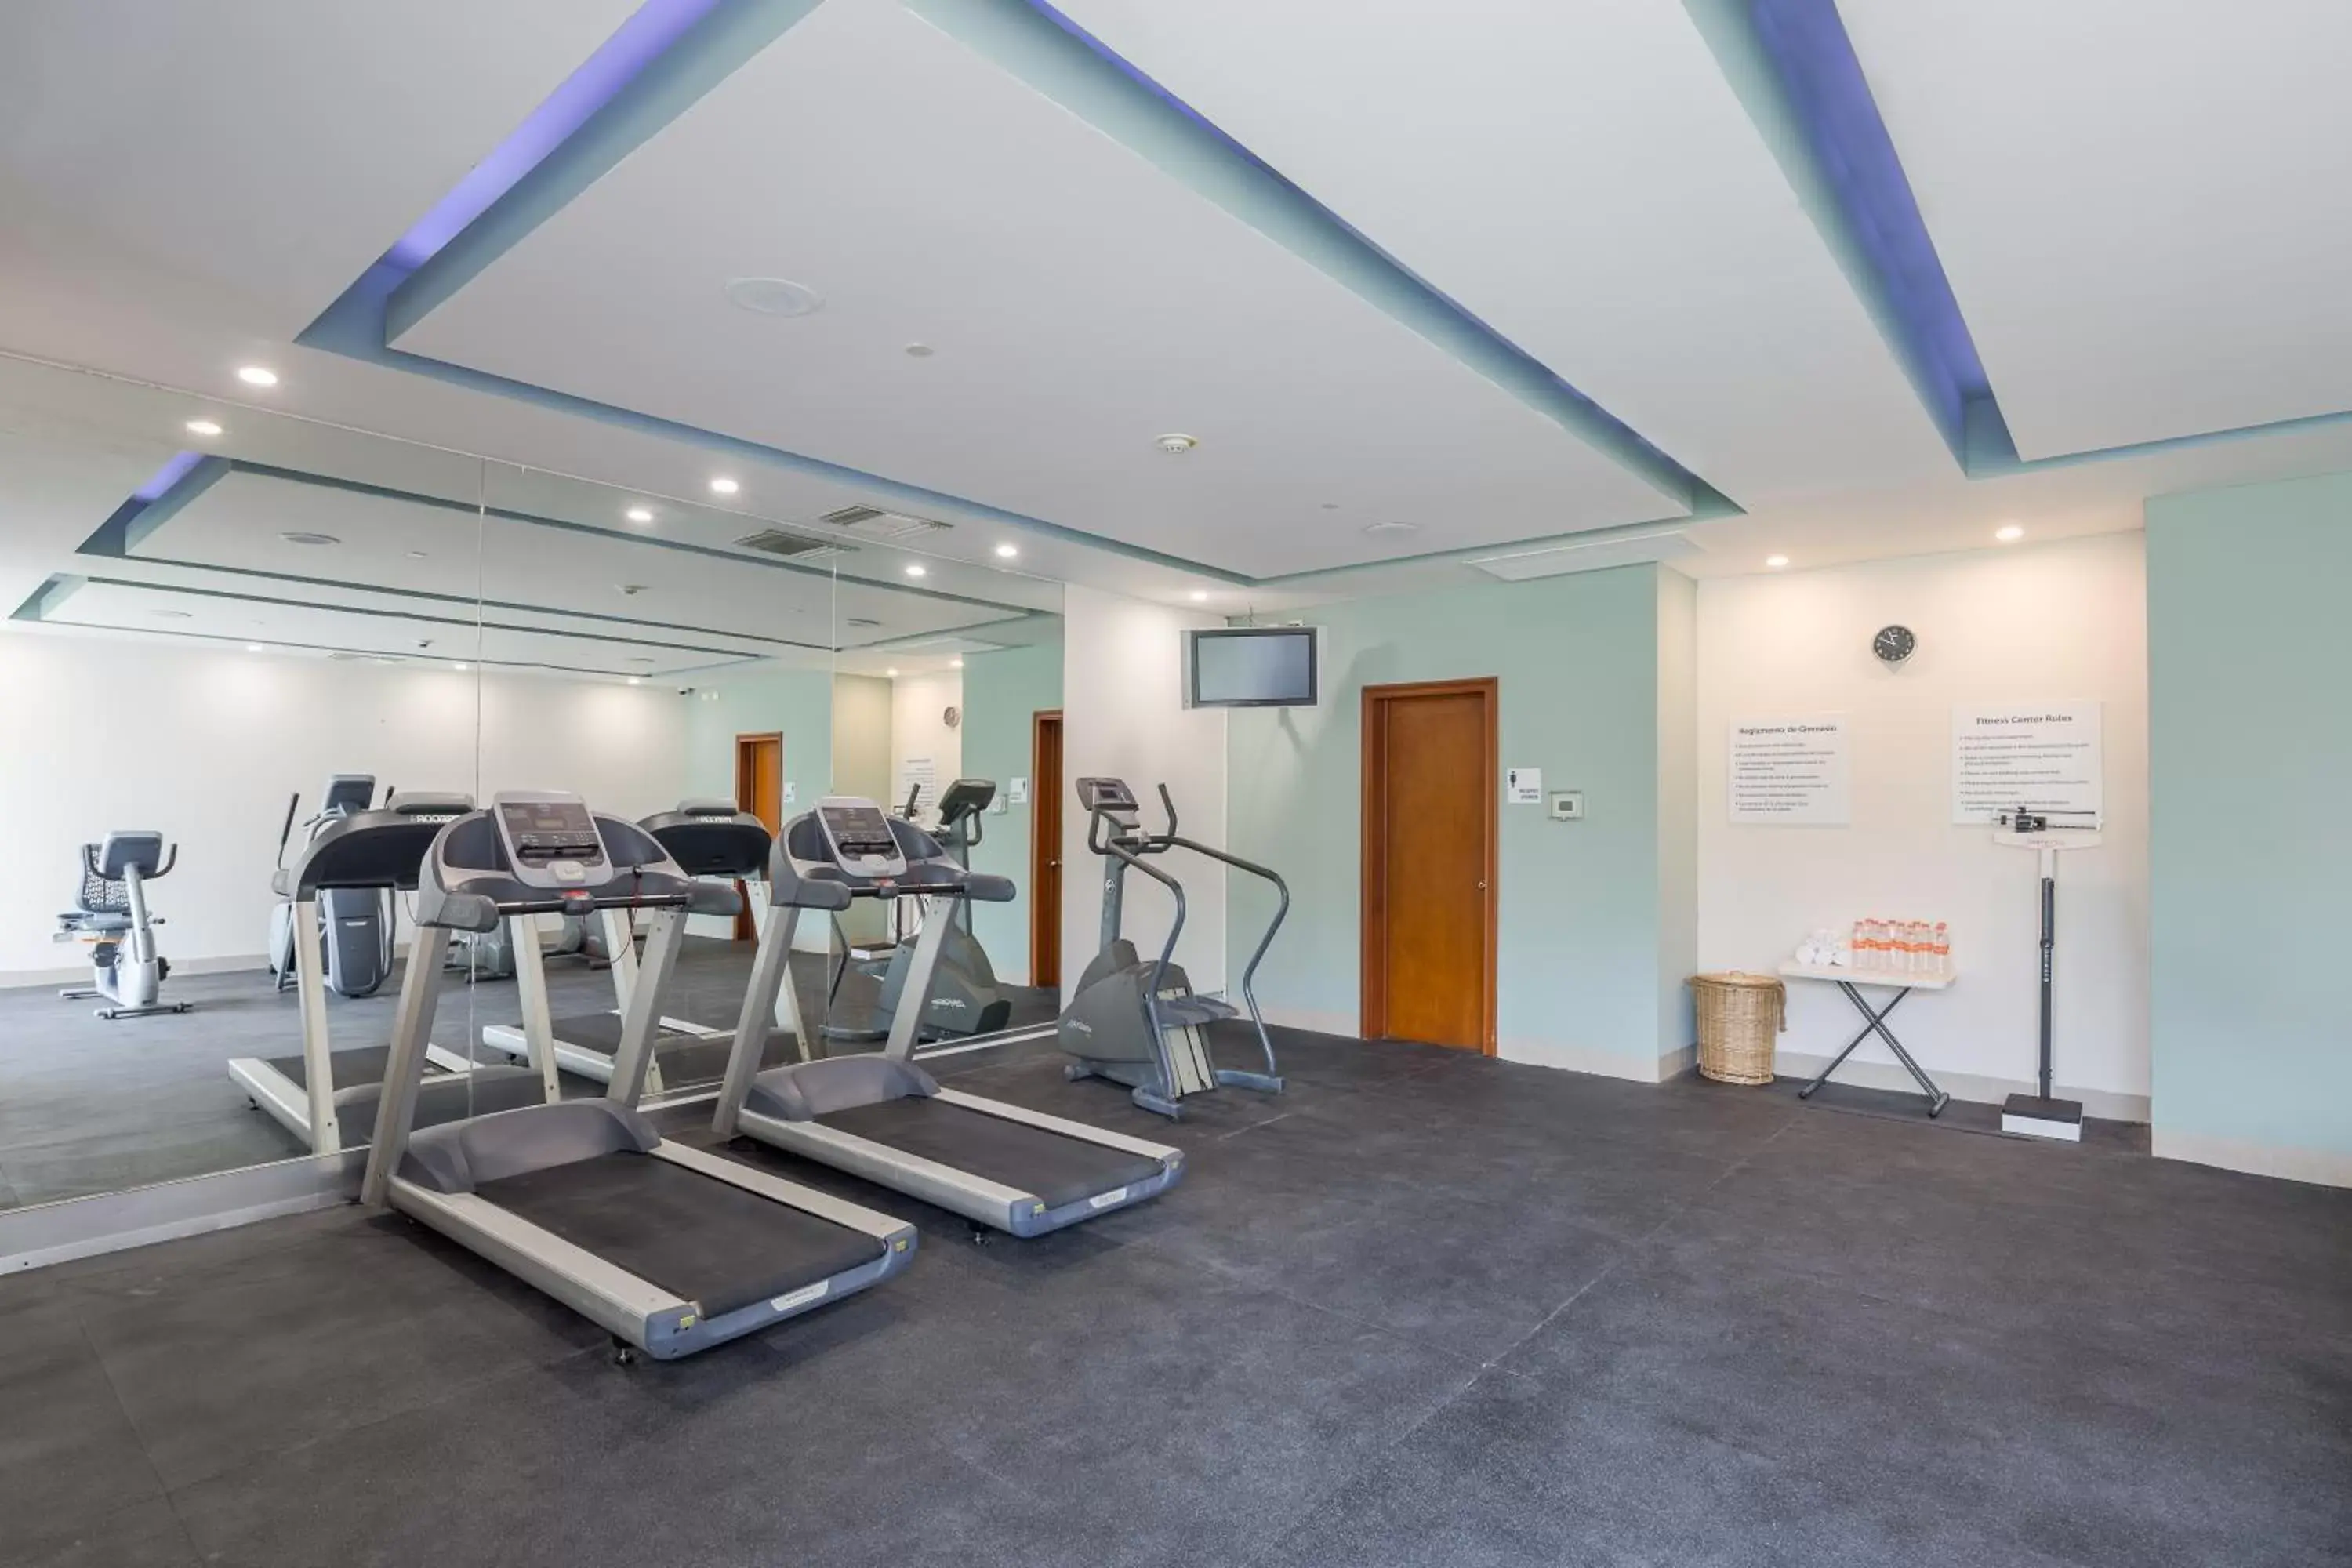 Fitness centre/facilities, Fitness Center/Facilities in Wyndham Garden Playa del Carmen